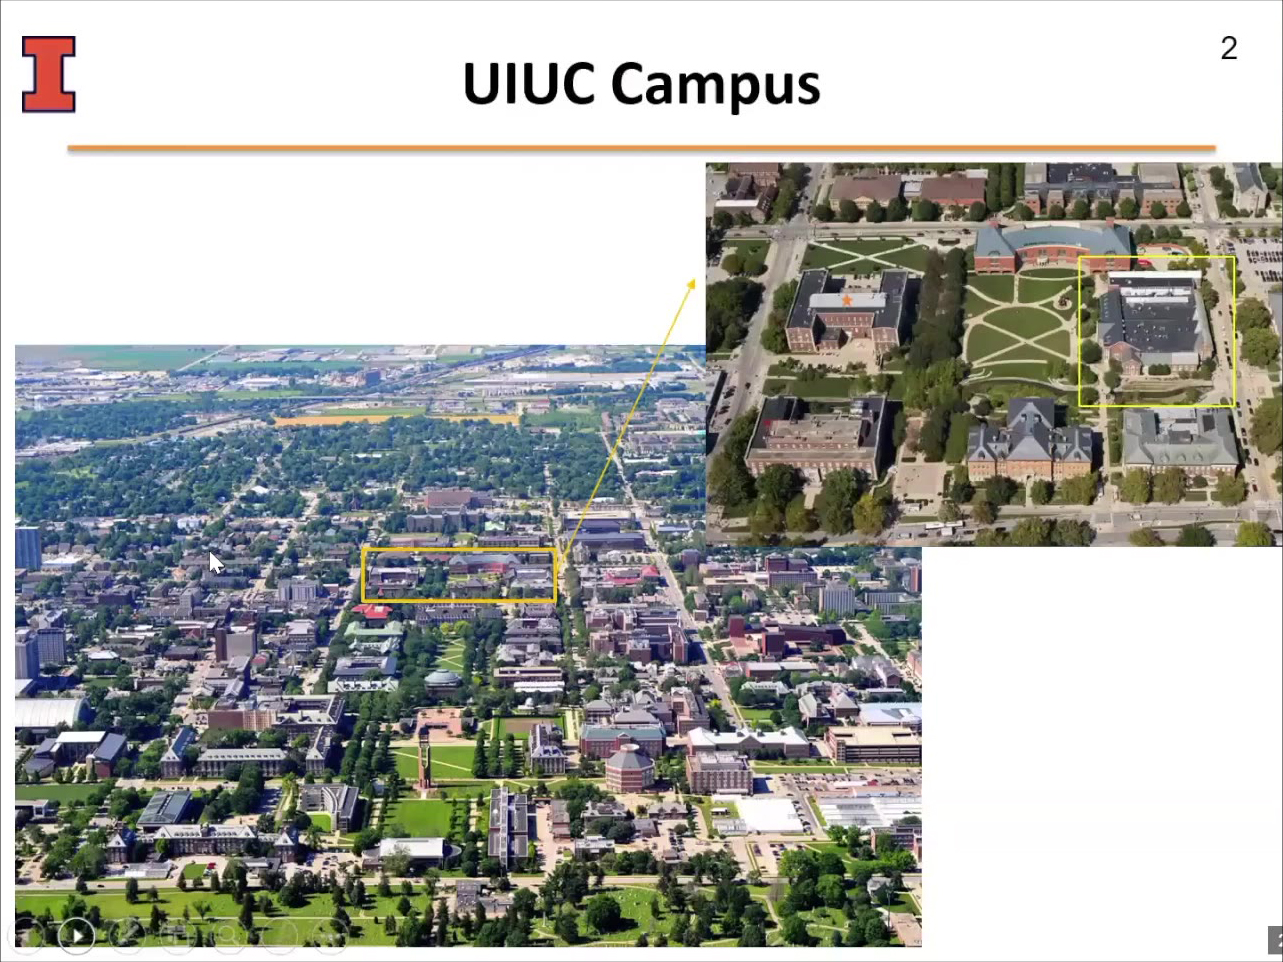 UIUC Campus